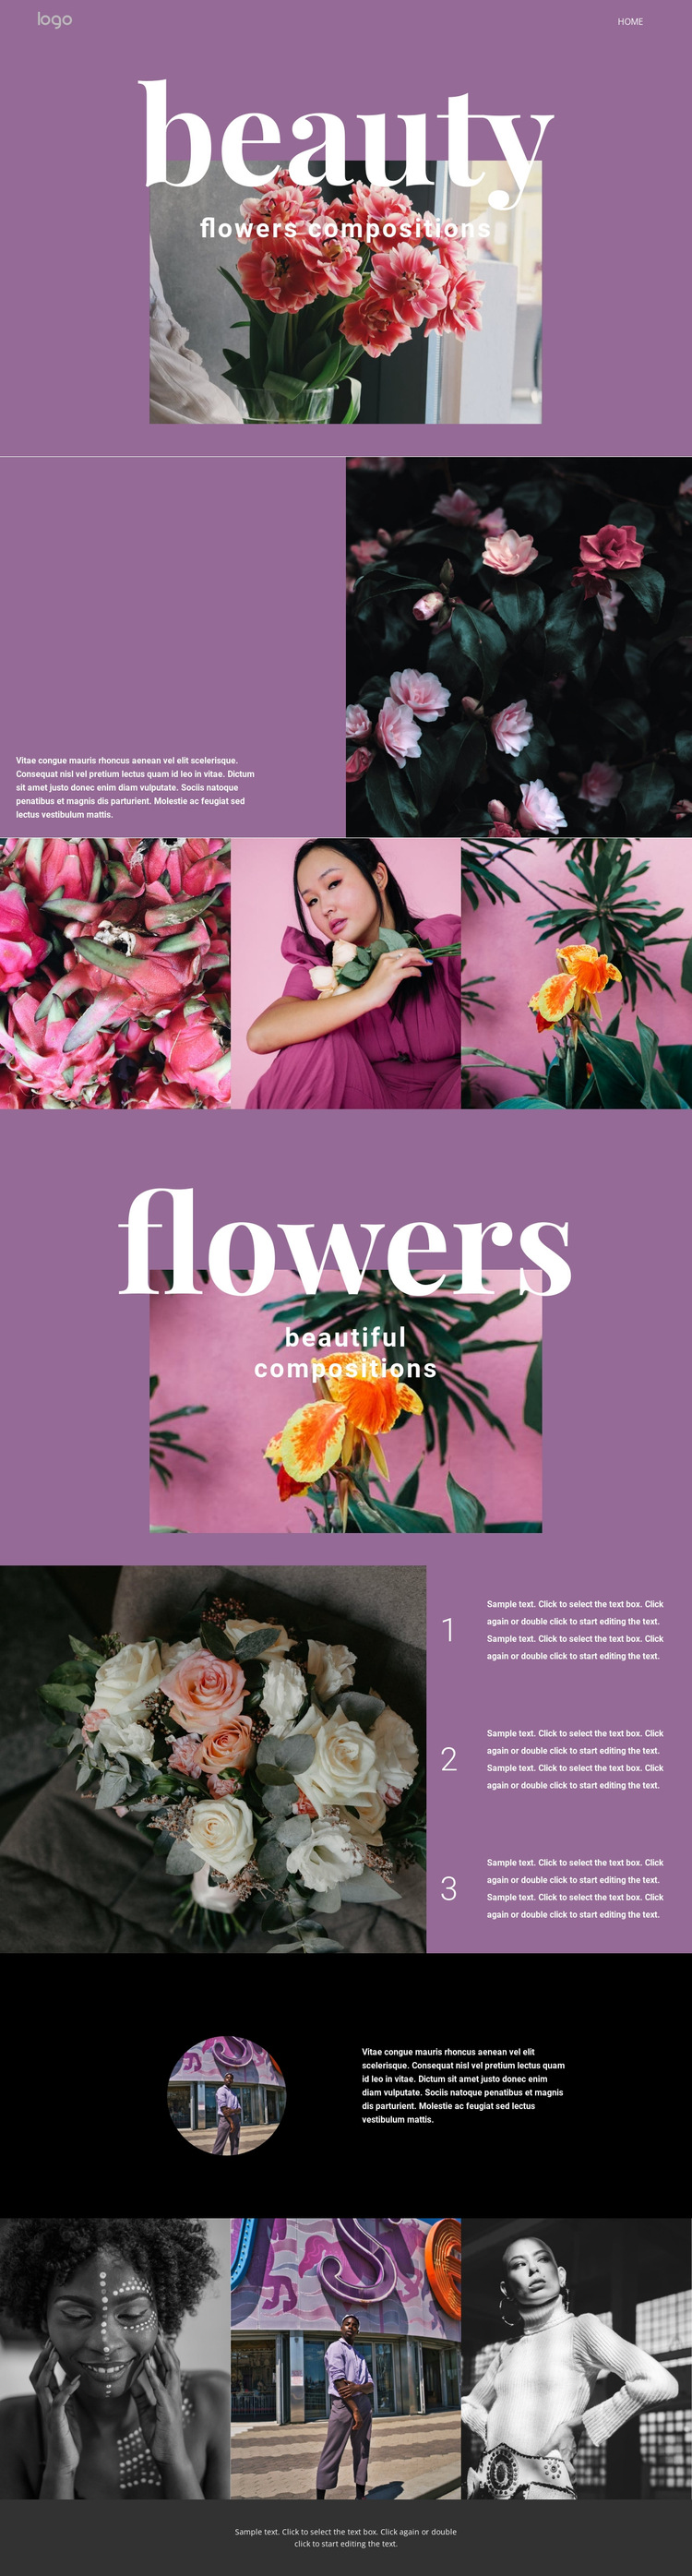 Flower salon HTML5 Template